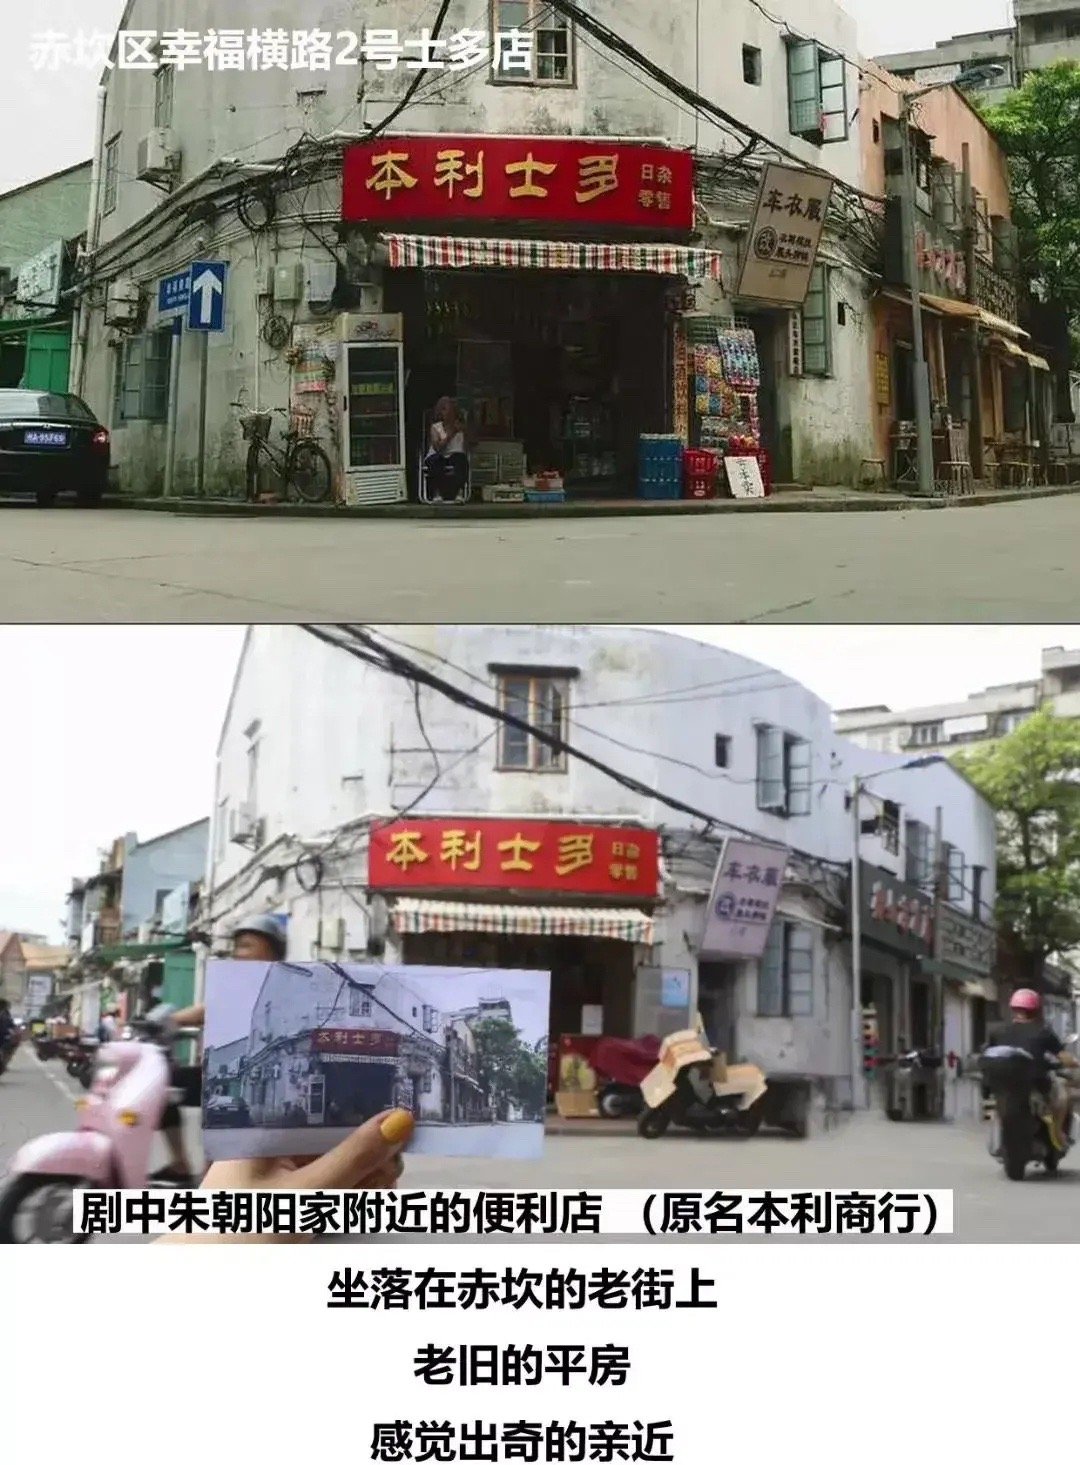 《隐秘的角落》带火湛江老街 日游客量达2000人次